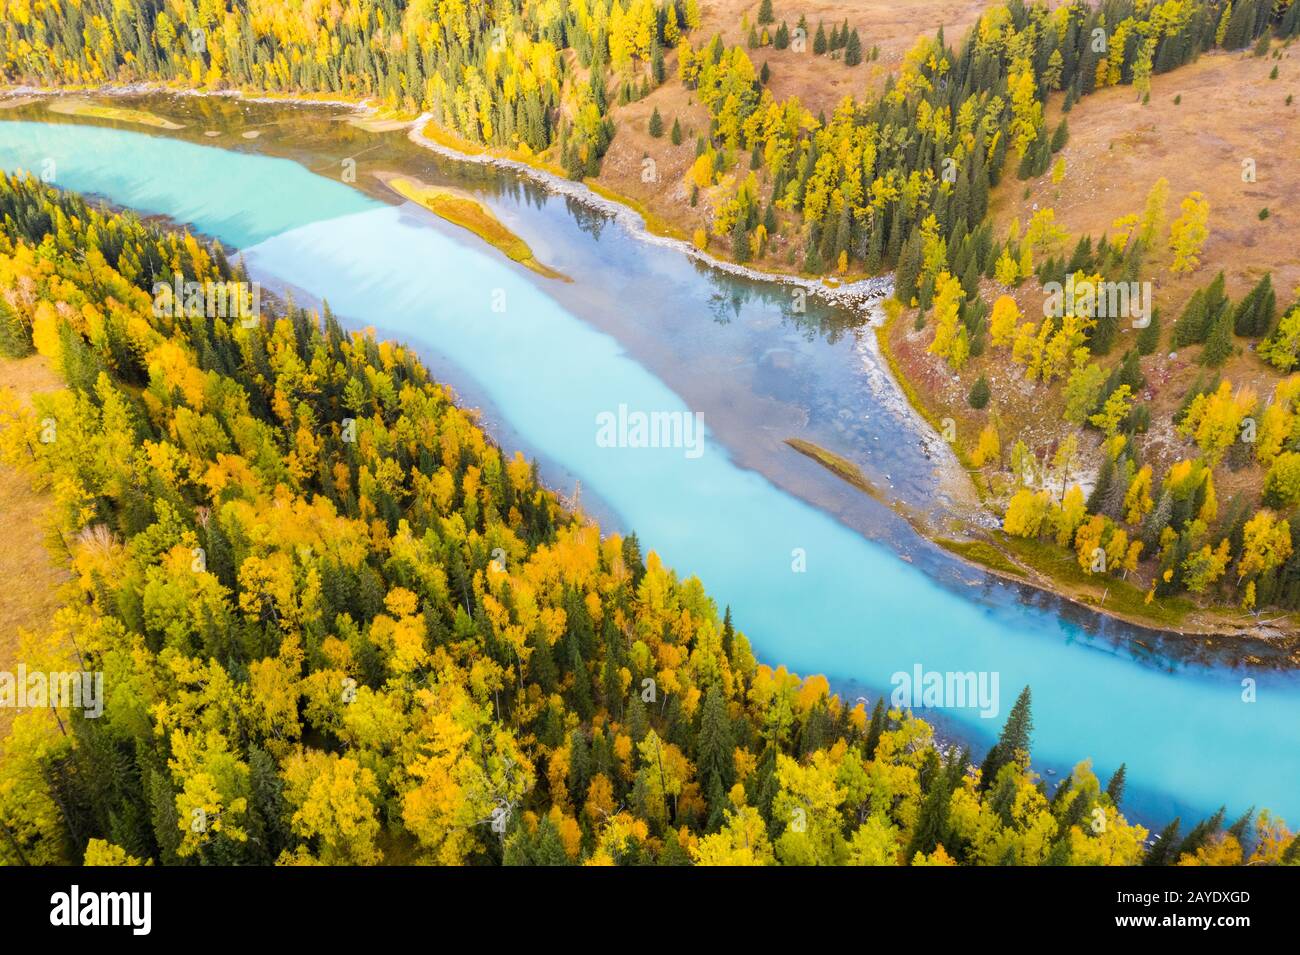 beautiful kanas landscape in autumn Stock Photo